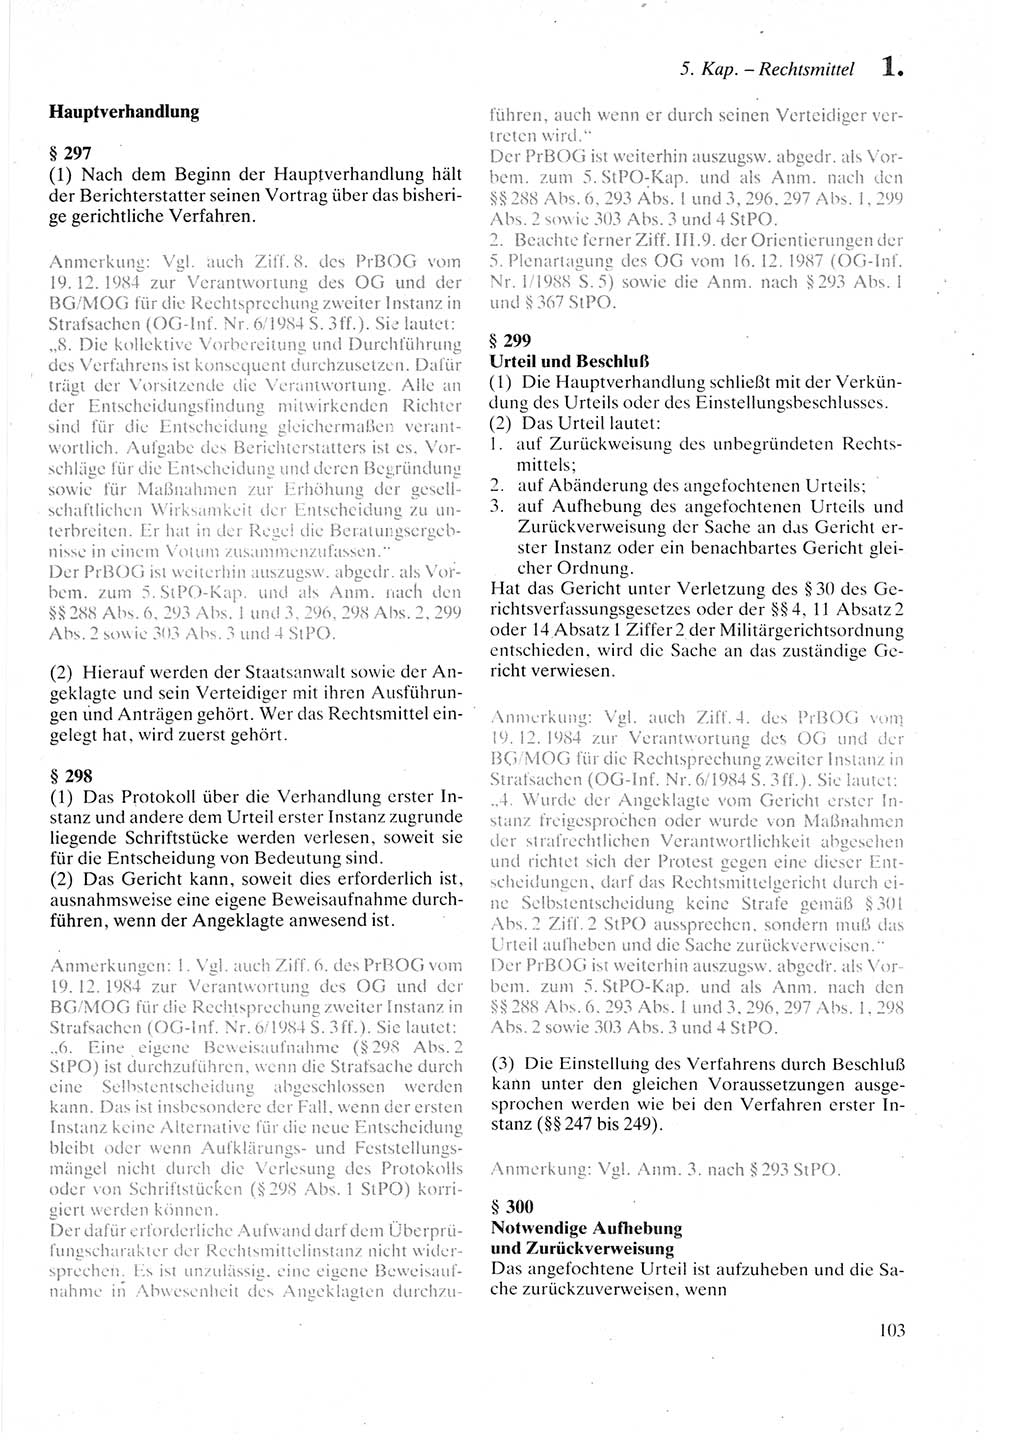 Strafprozeßordnung (StPO) der Deutschen Demokratischen Republik (DDR) sowie angrenzende Gesetze und Bestimmungen 1987, Seite 103 (StPO DDR Ges. Best. 1987, S. 103)